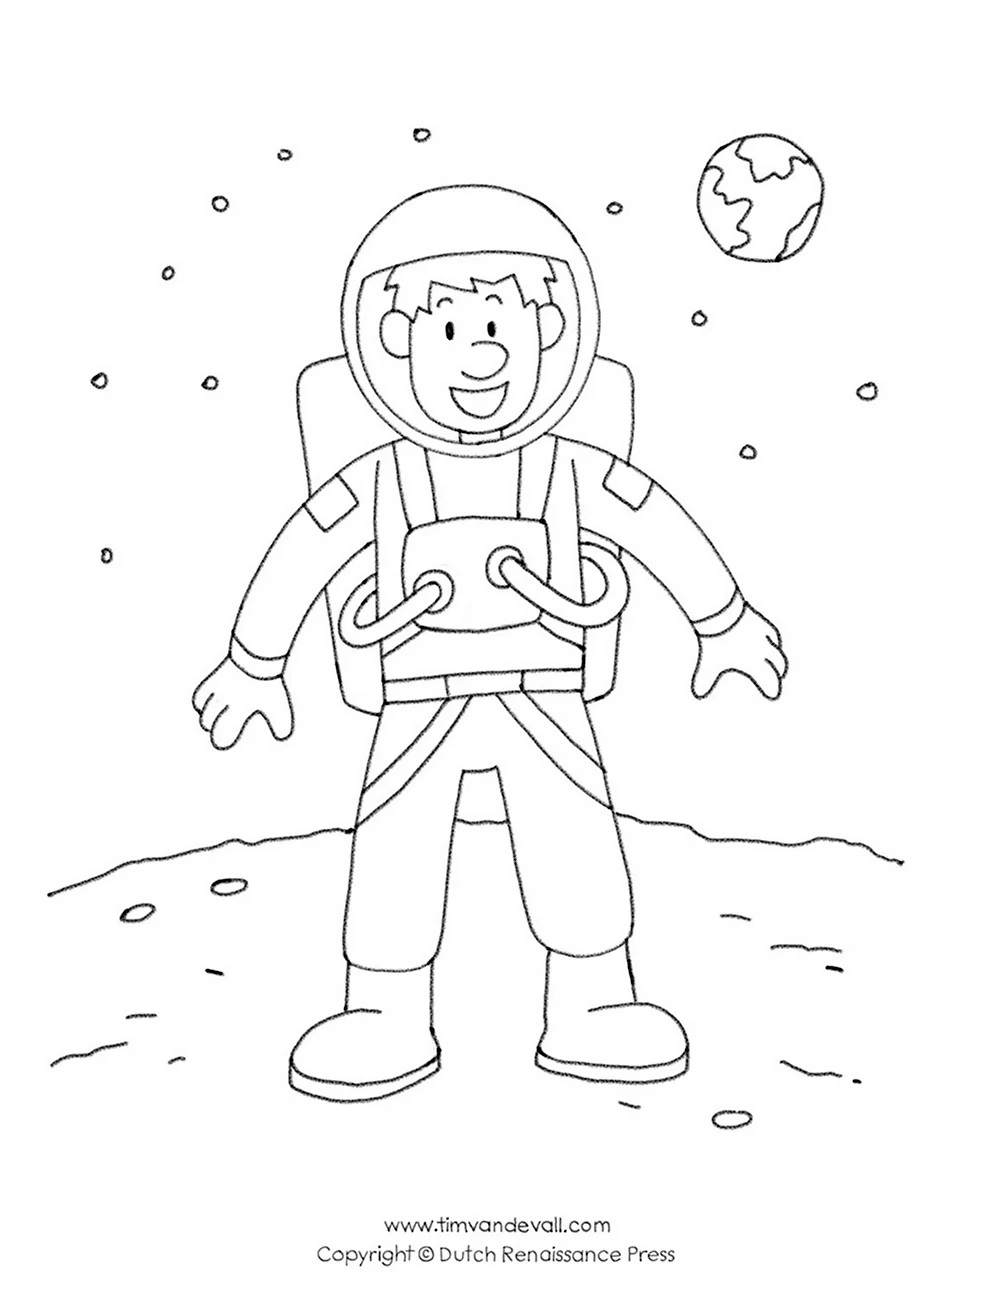 Космонавт рисунок для детей карандашом